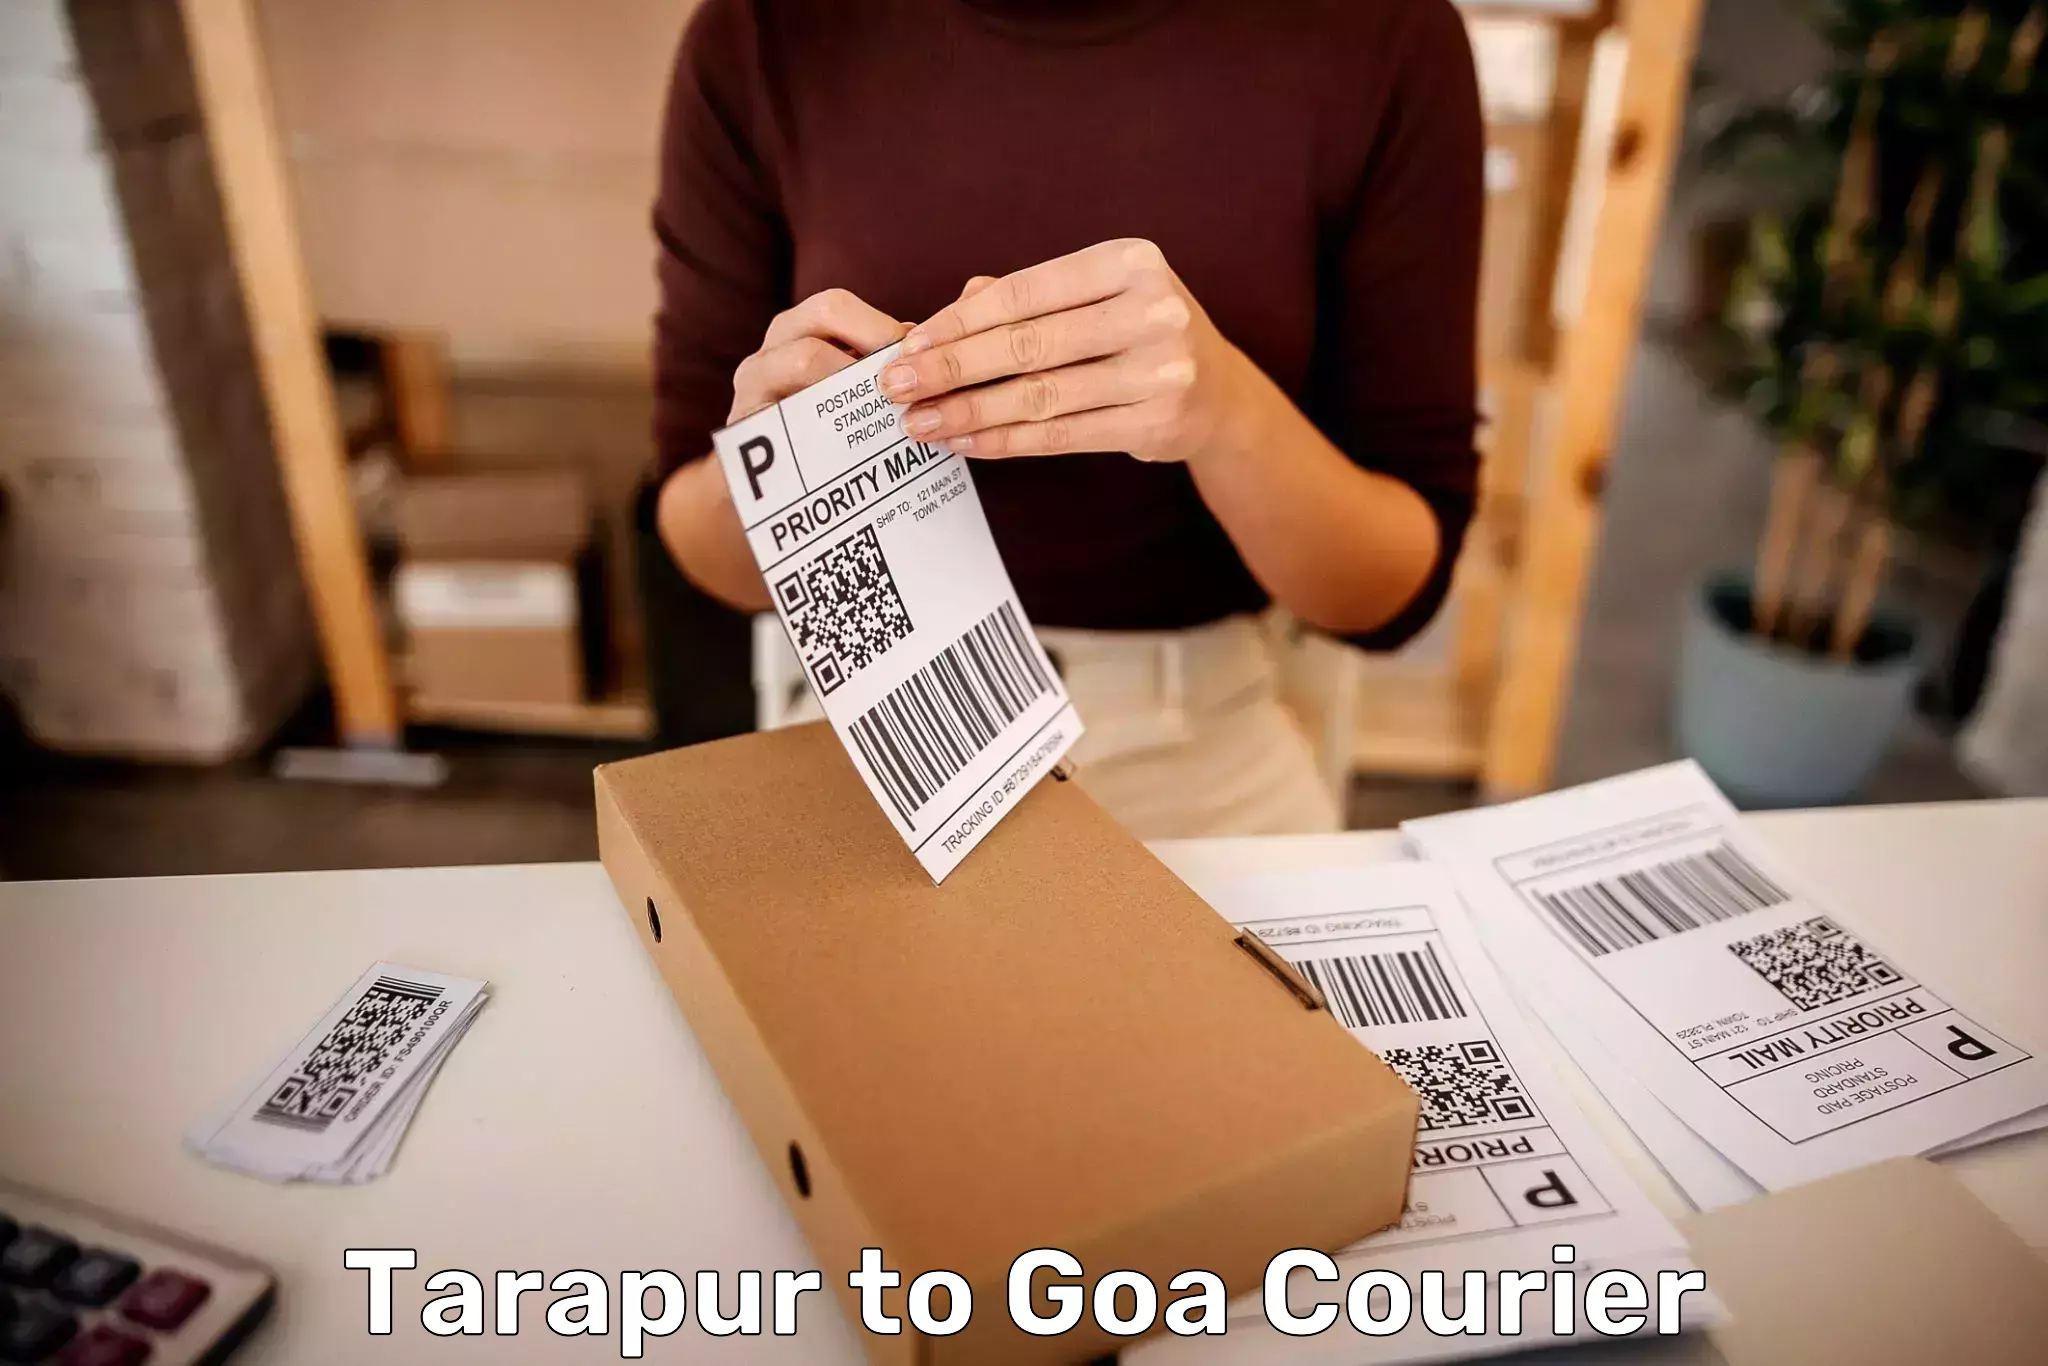 Baggage transport scheduler Tarapur to NIT Goa